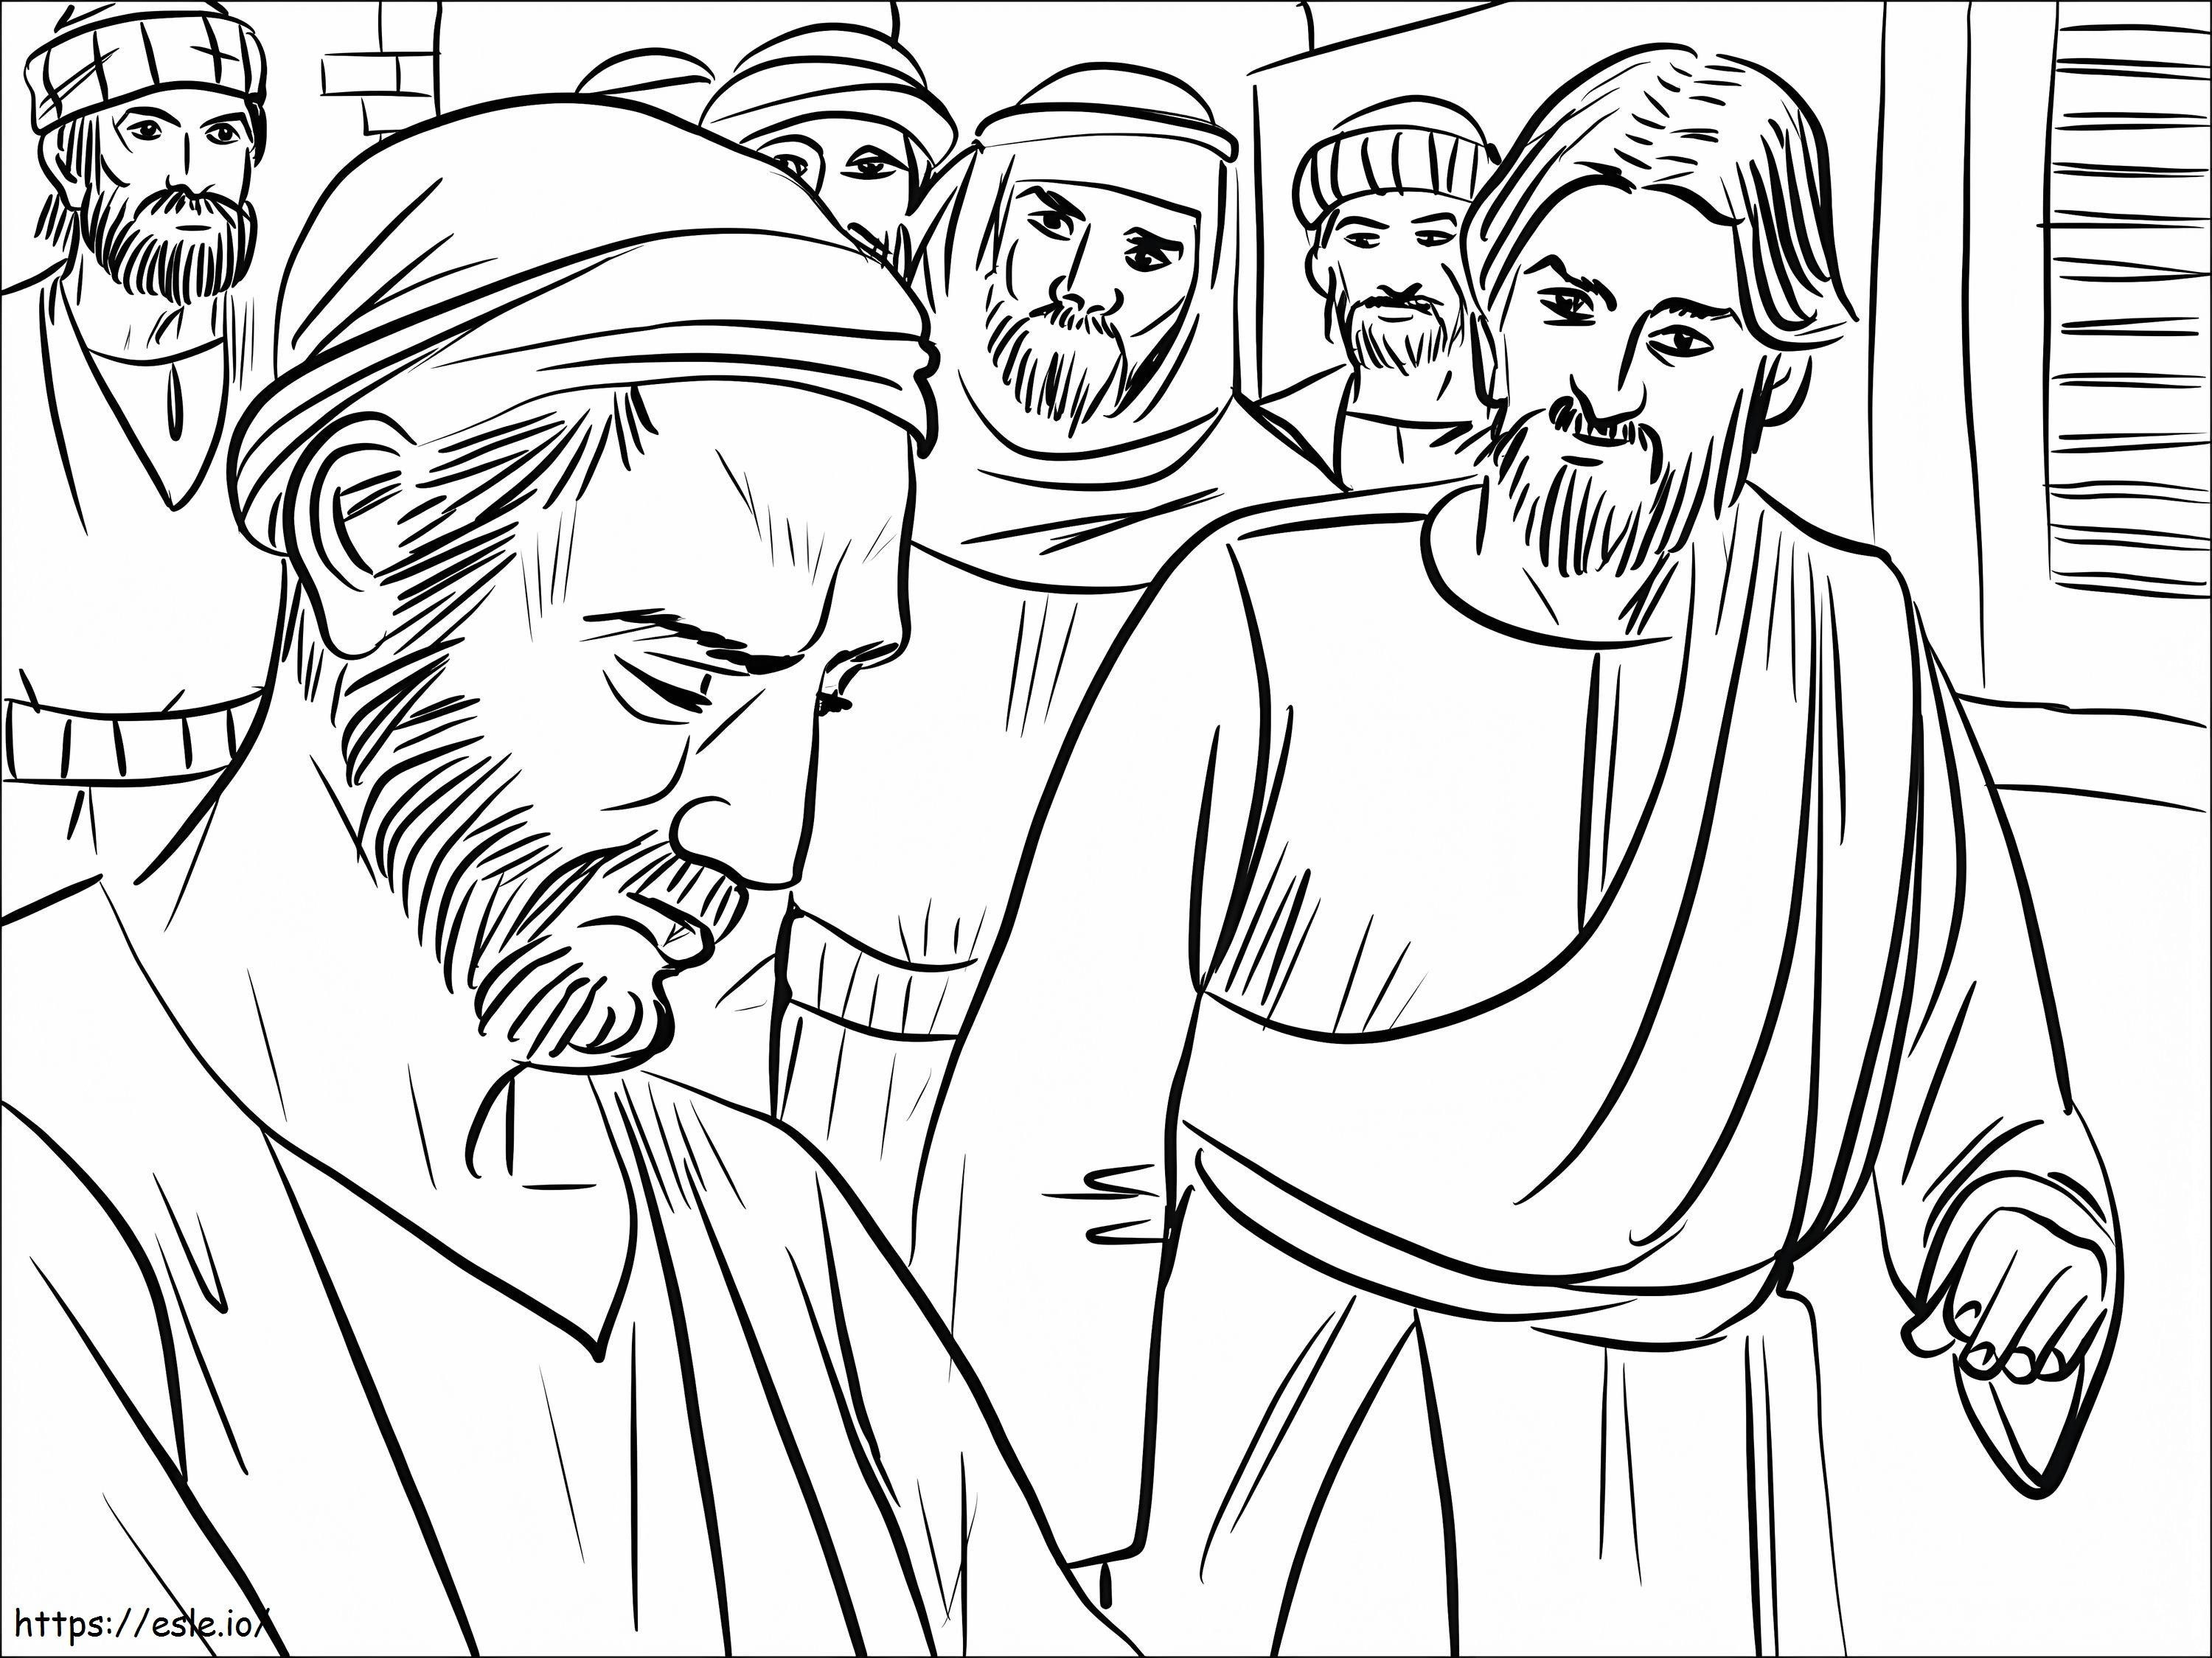  01 Yesus Menyembuhkan Seorang Pria yang Terlahir Buta Gambar Mewarnai